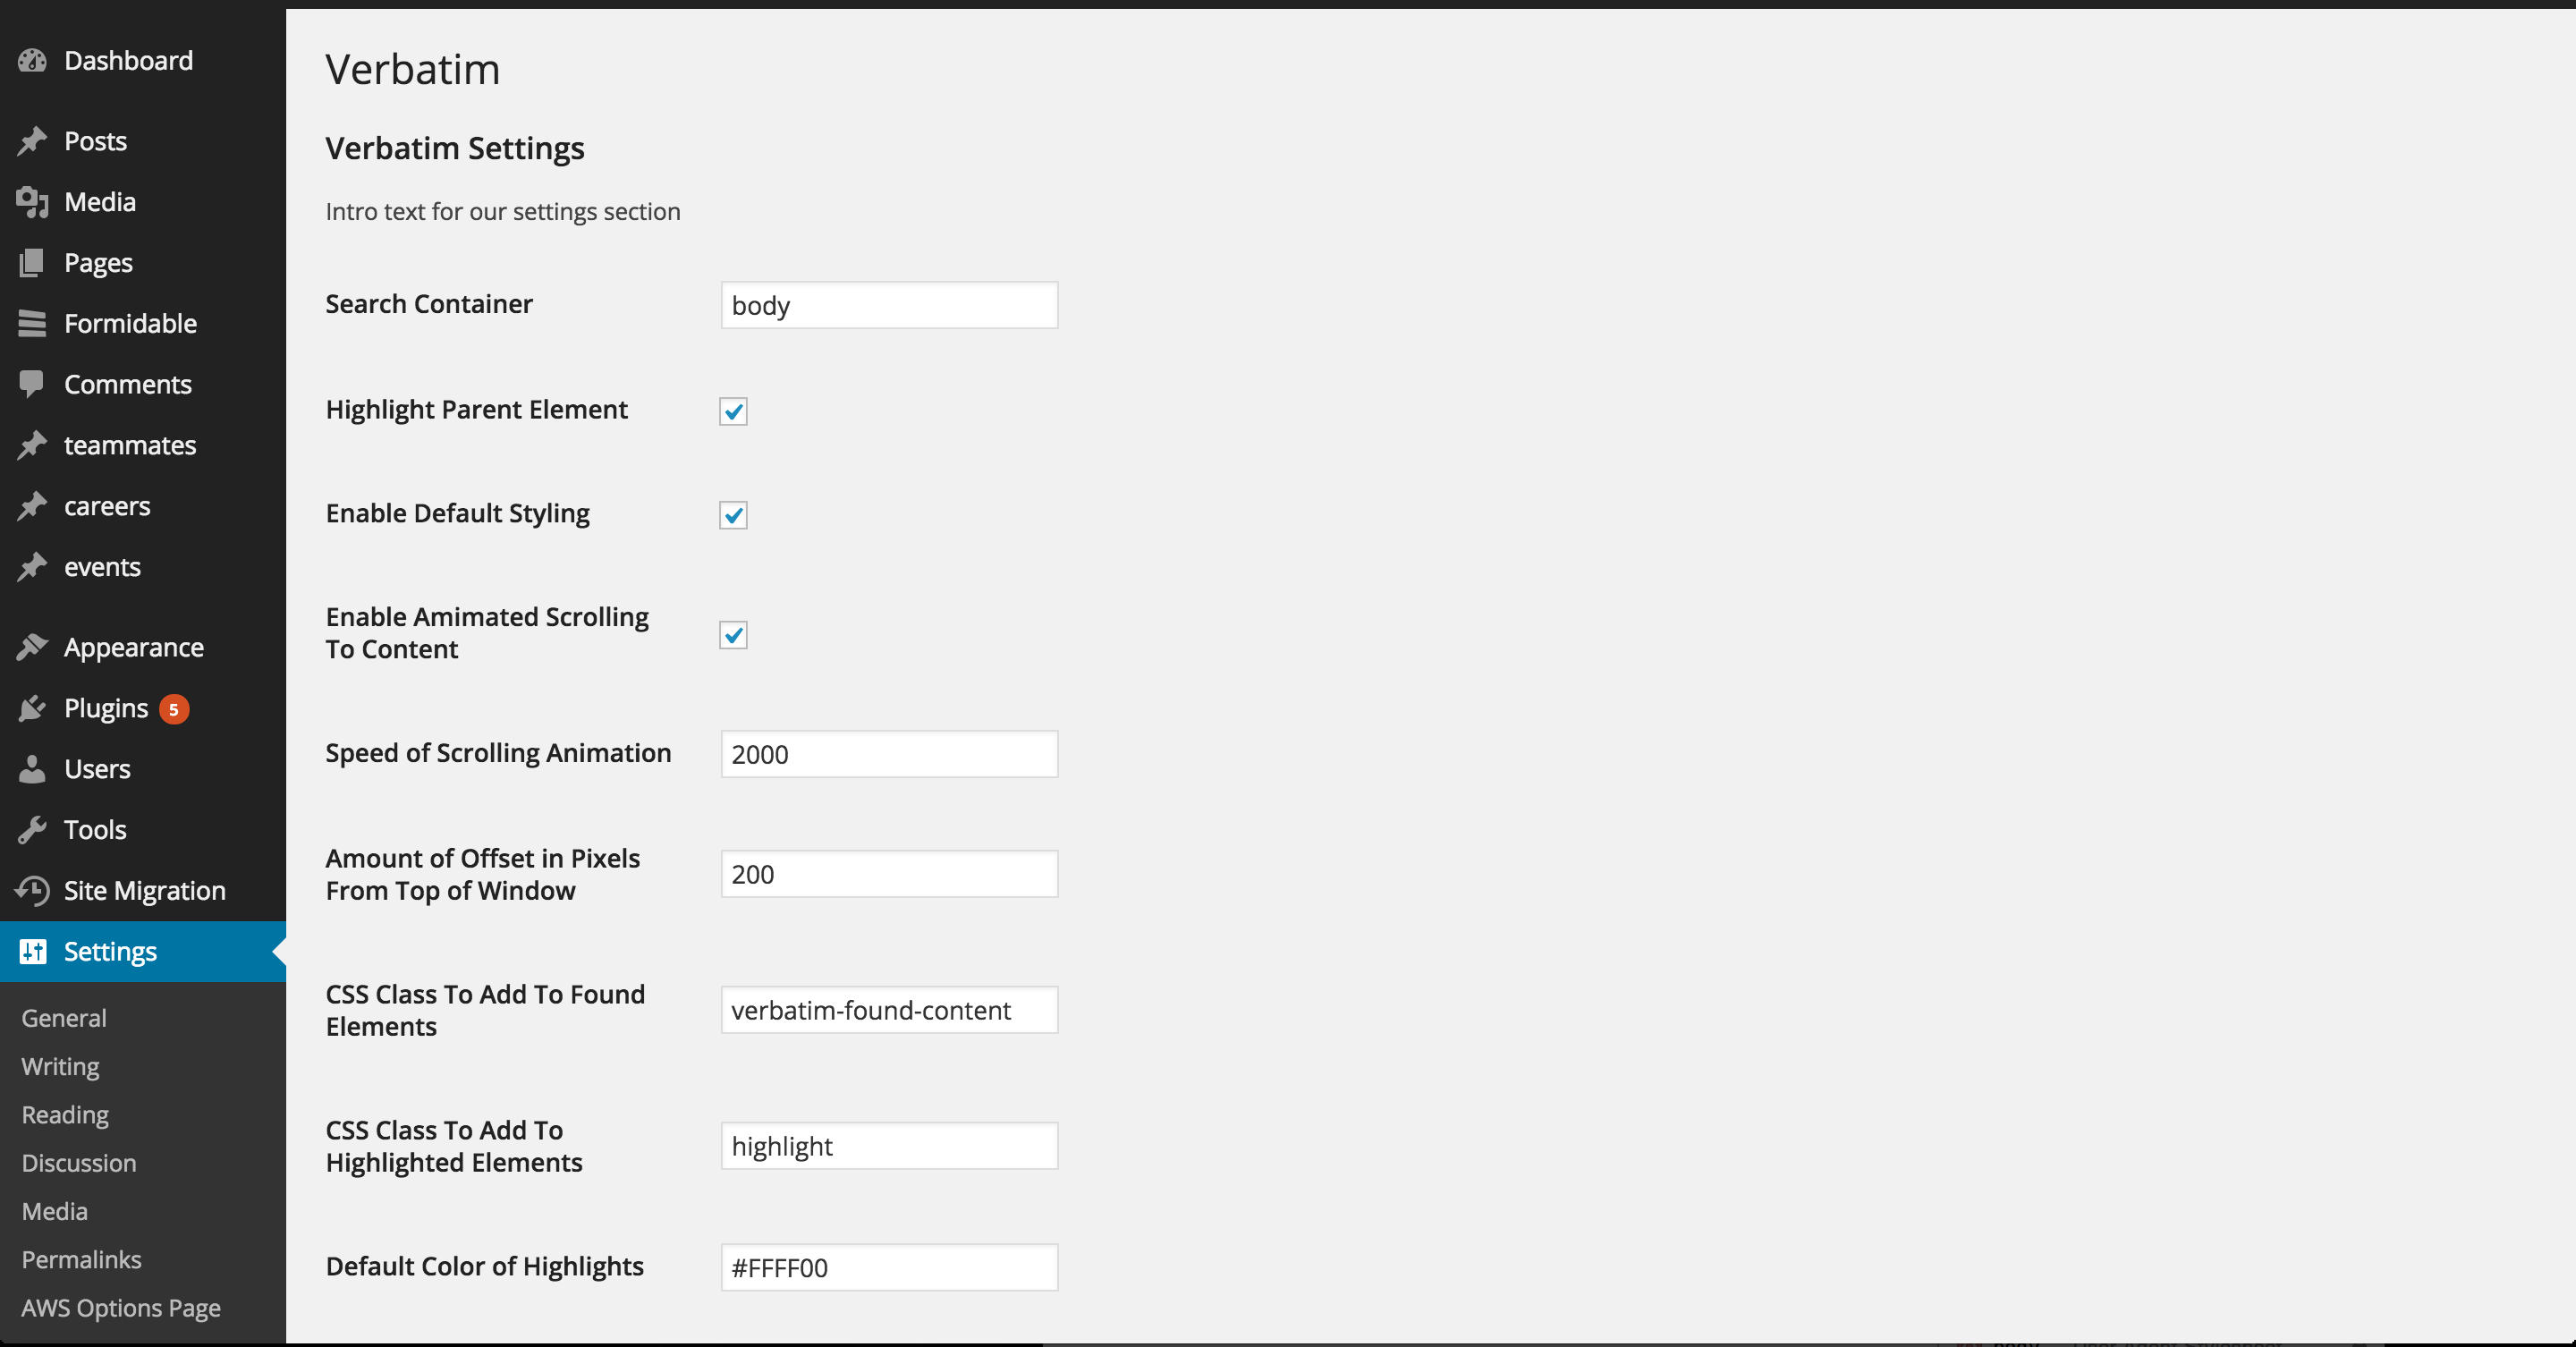 The admin settings menu